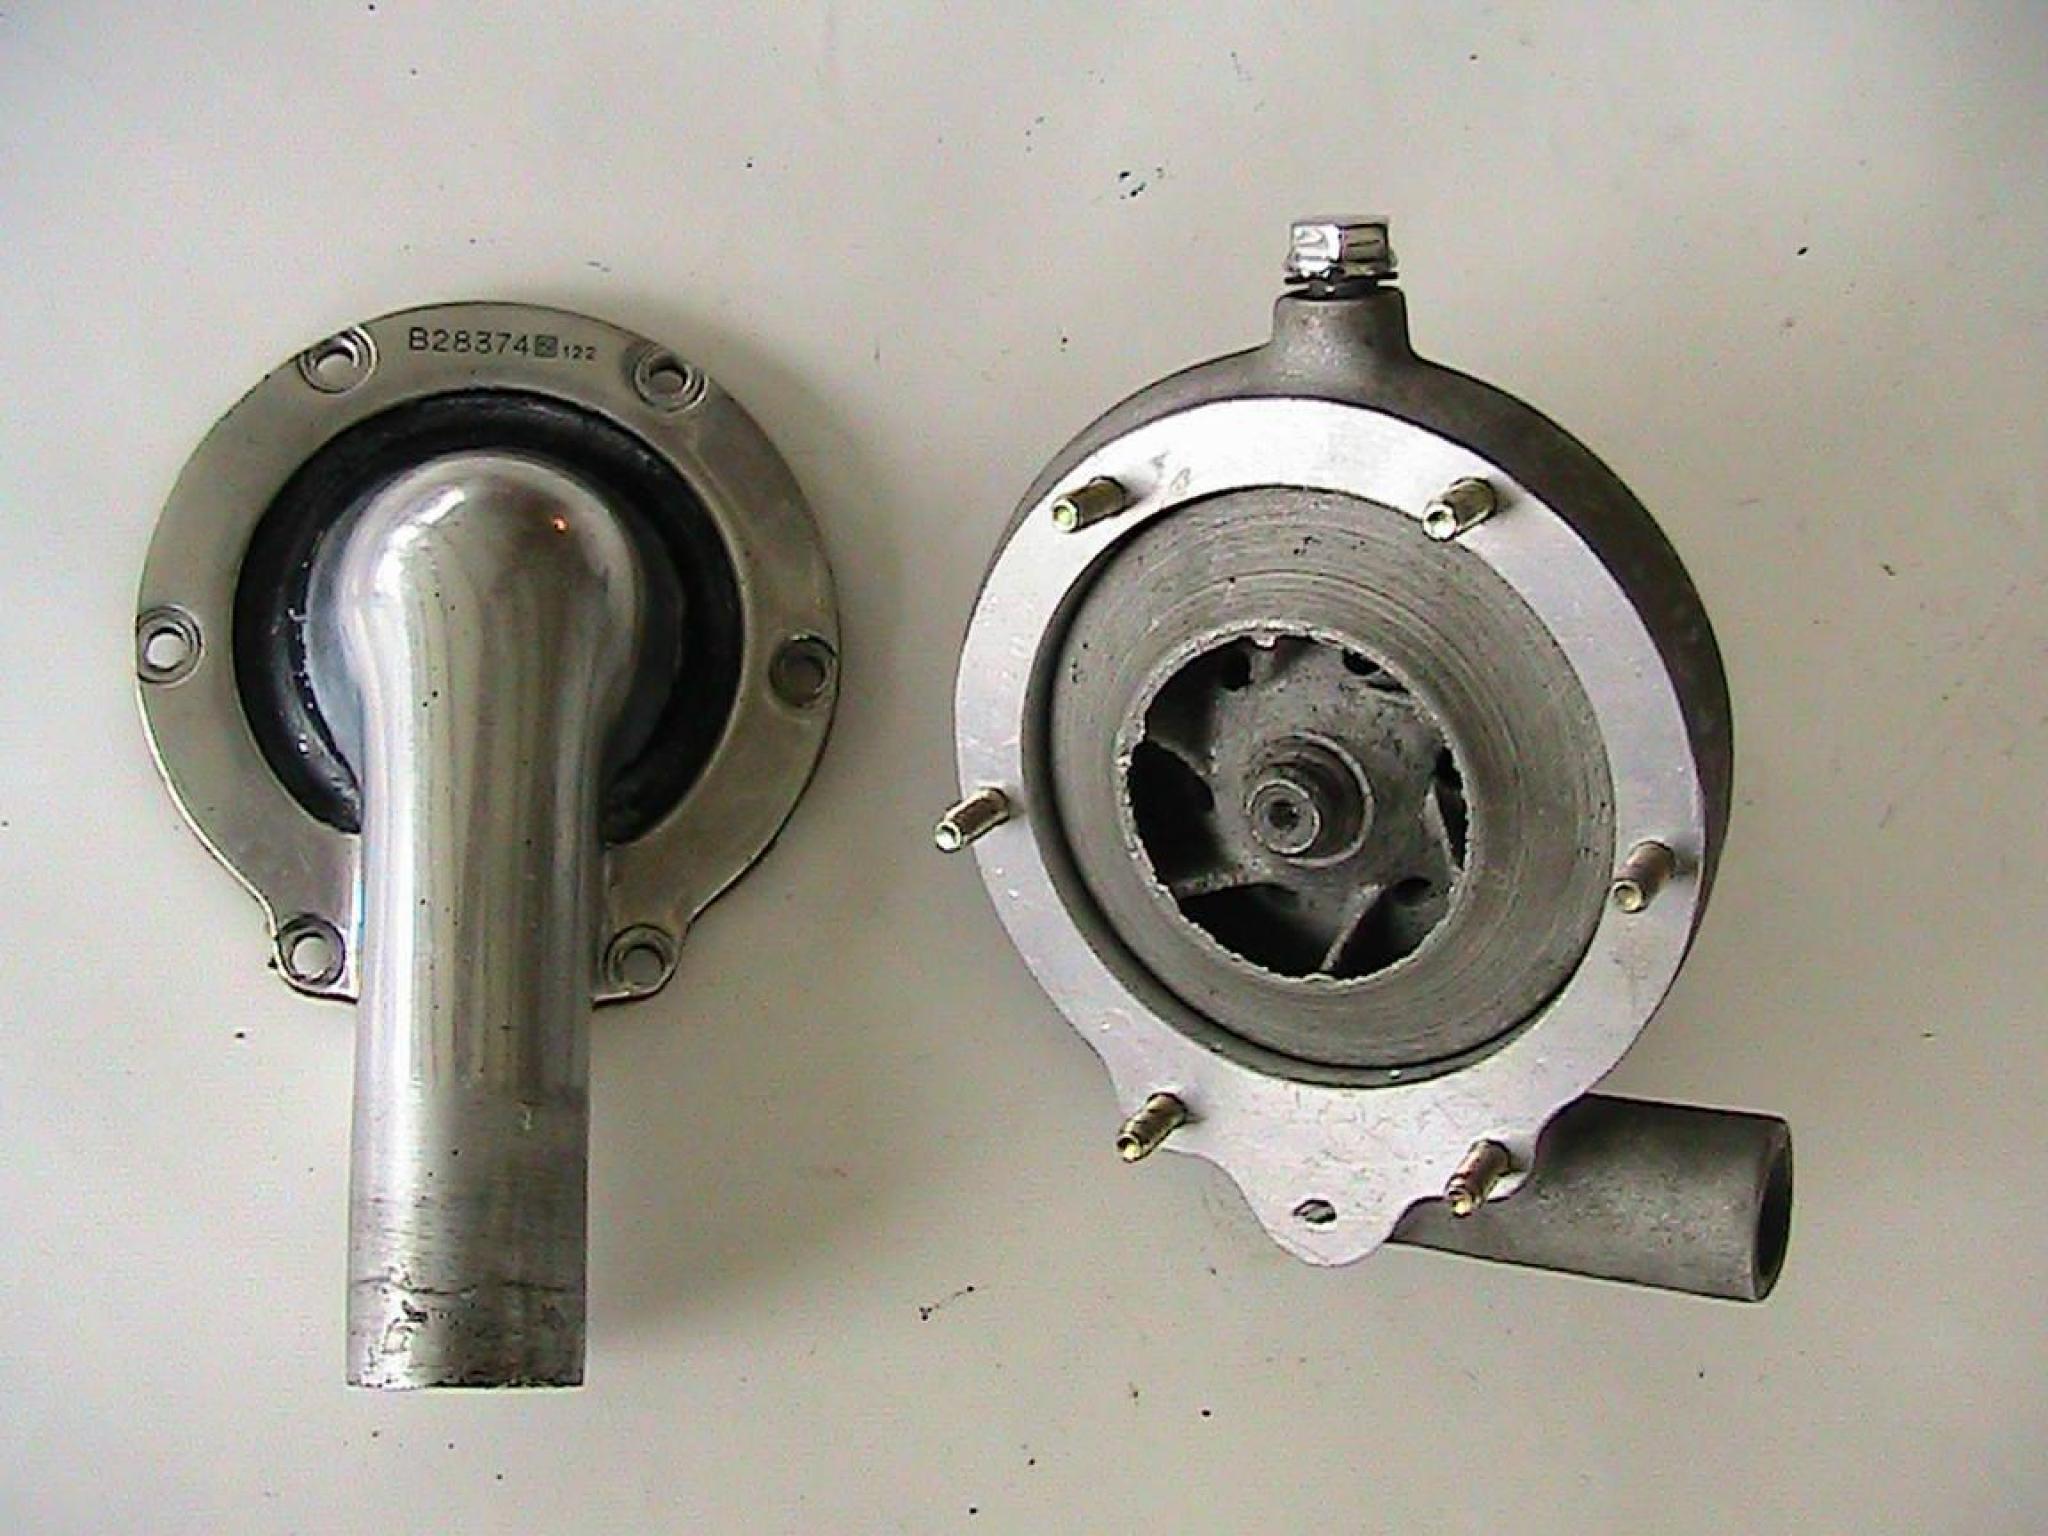 HISPANO SUIZA J12. POMPE GAUCHE pompe modifier avec système d' étanchéité par garniture mécanique a glace céramique et axe monté sur roulement.